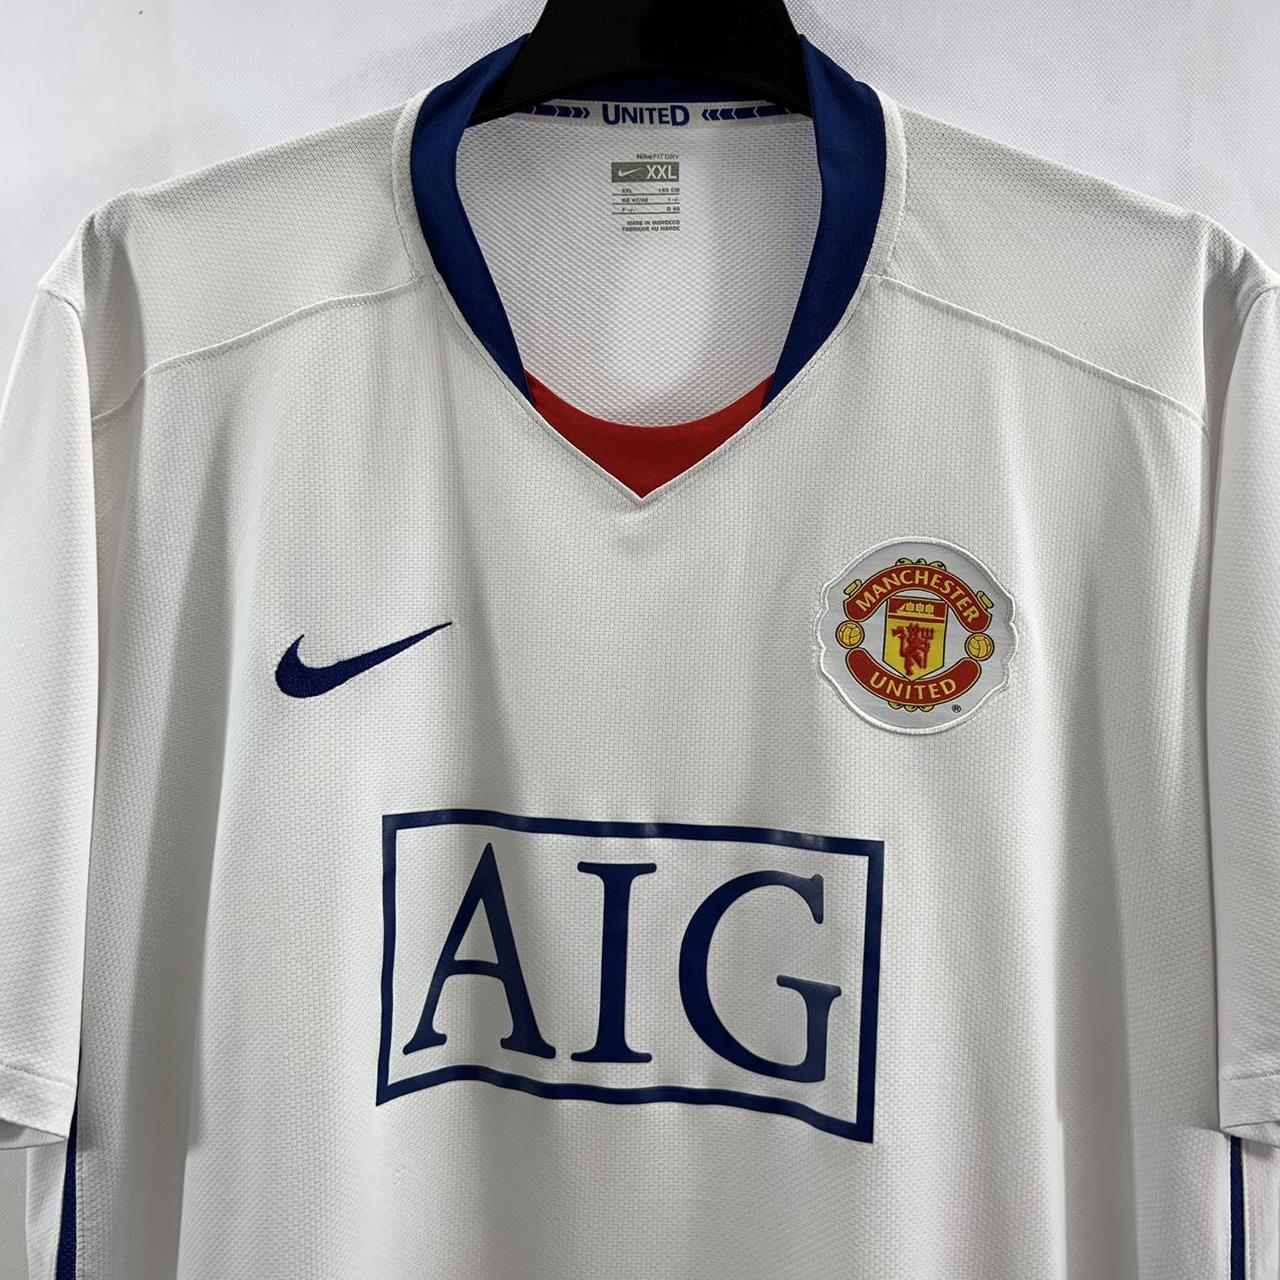 Manchester United Away Football Shirt 2008/10 Adults... - Depop